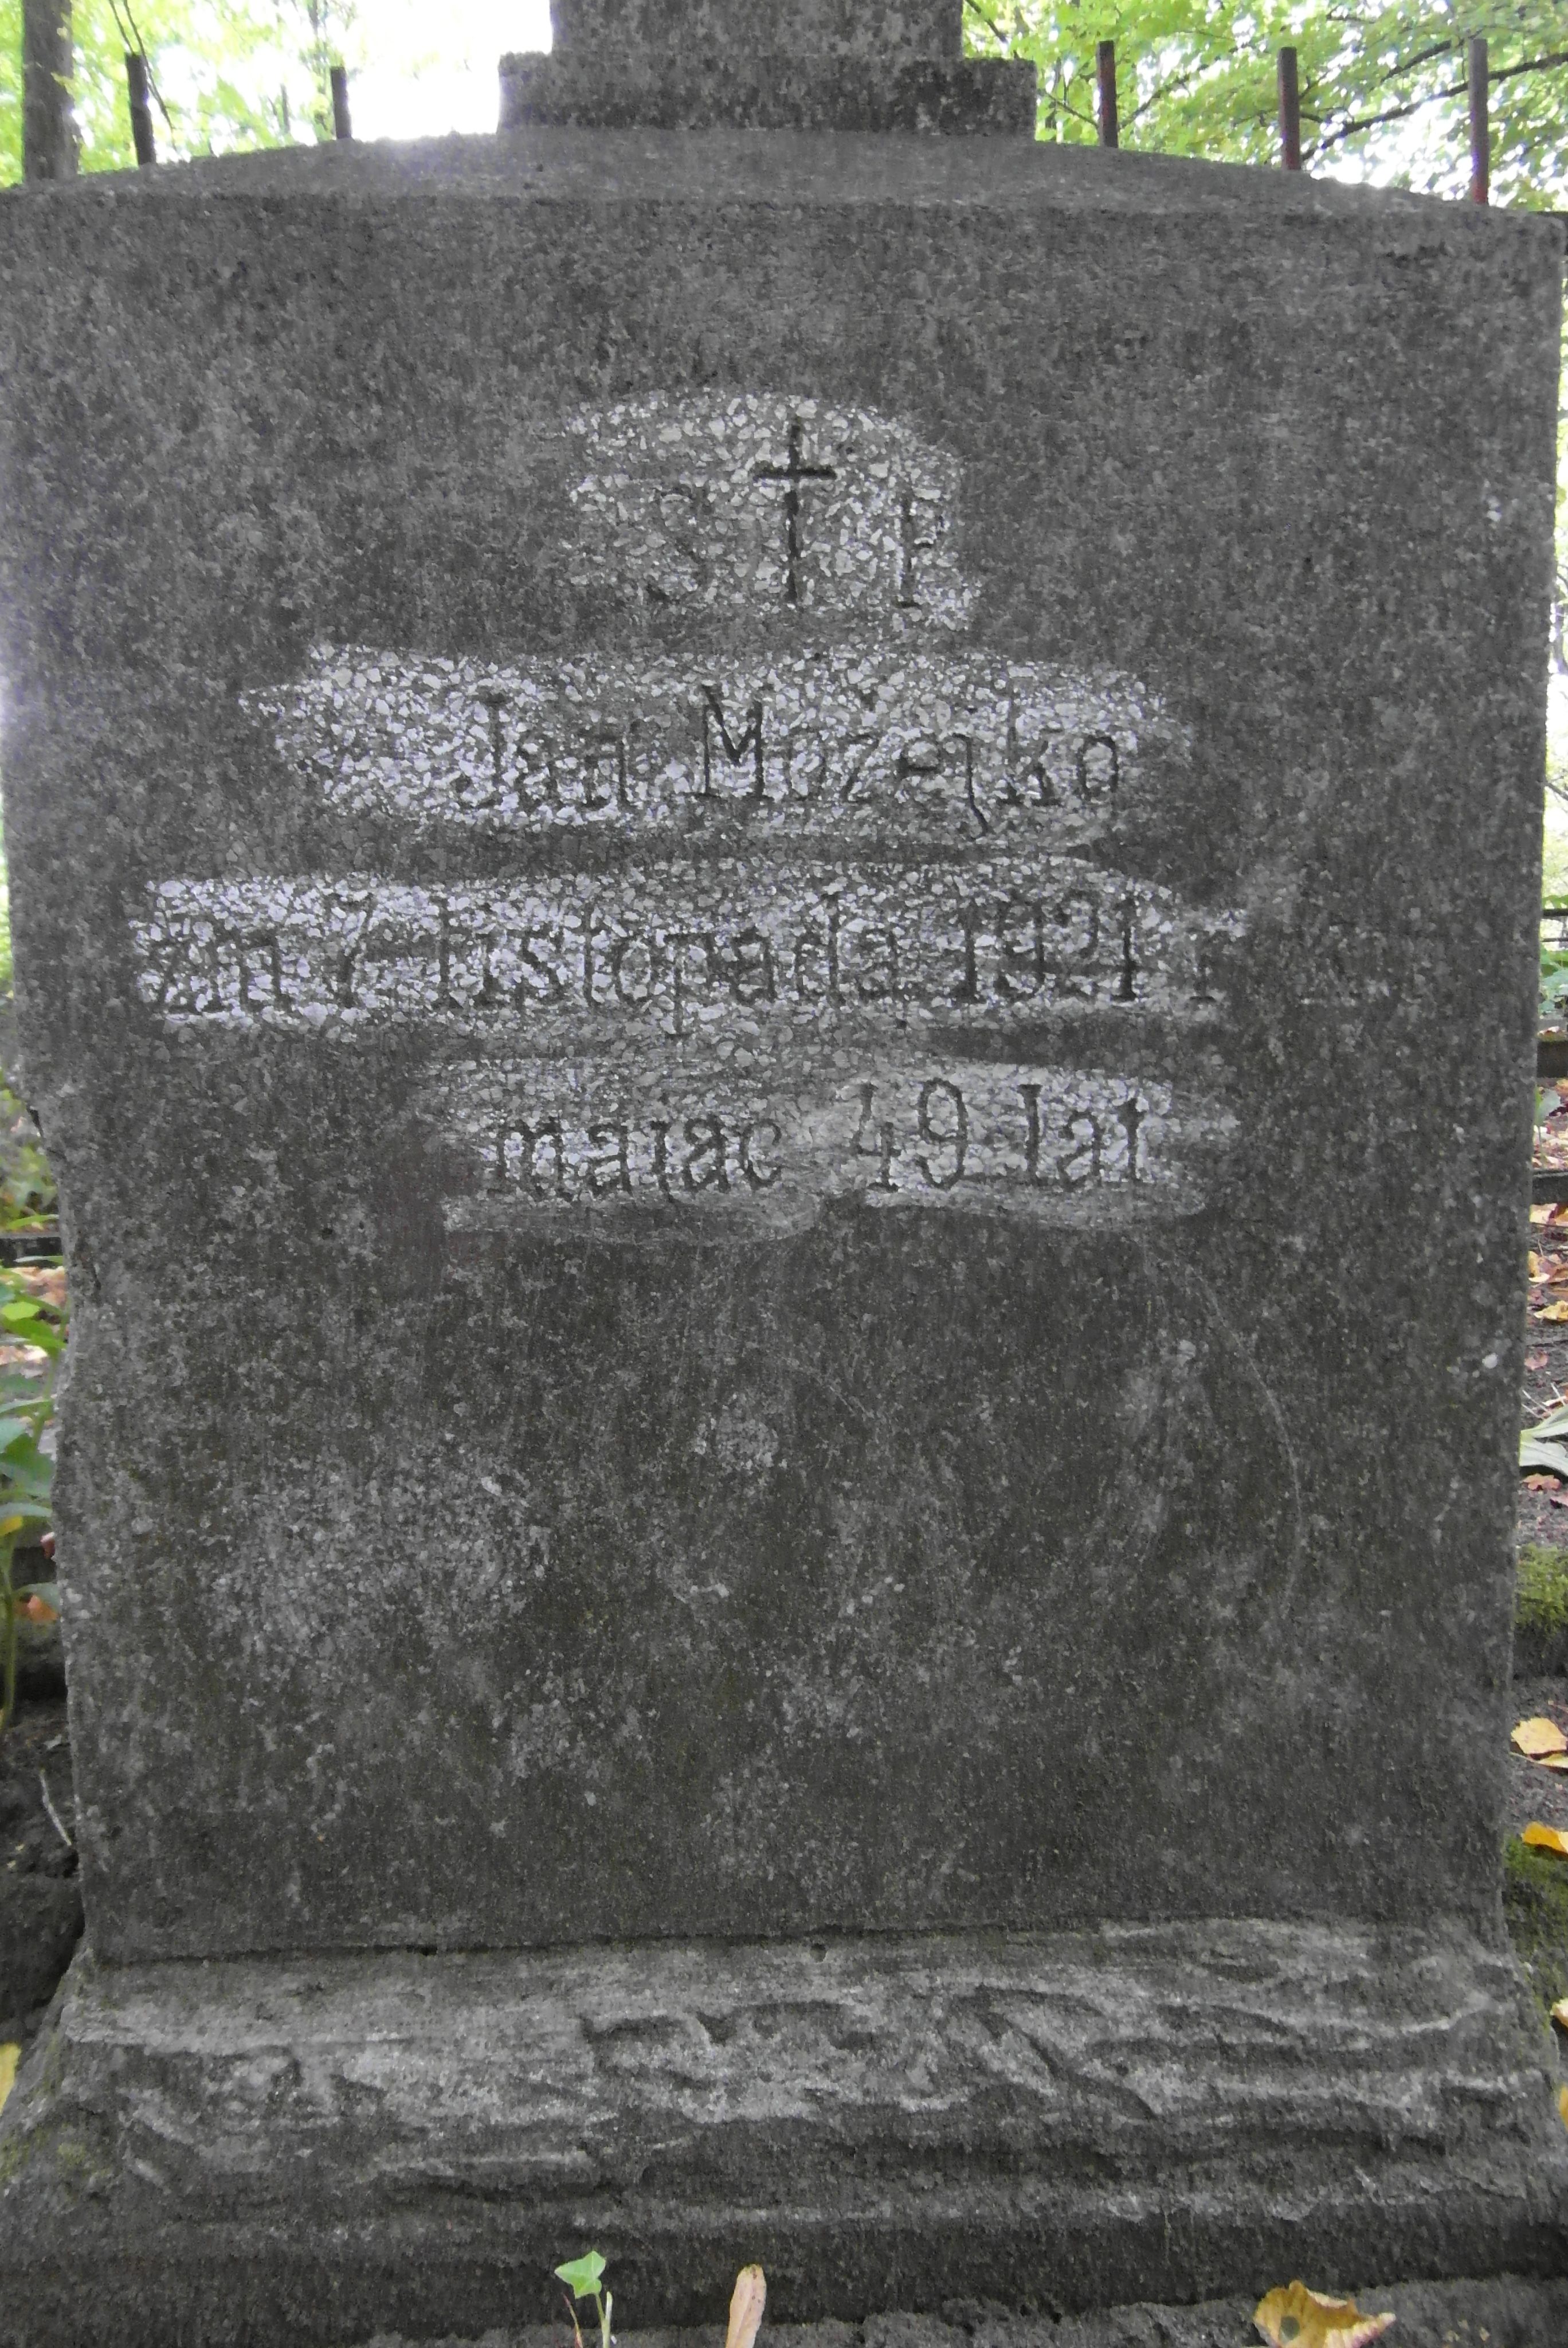 Napis z nagrobka Jana Możejko, cmentarz św. Michała w Rydze, stan z 2021 r.